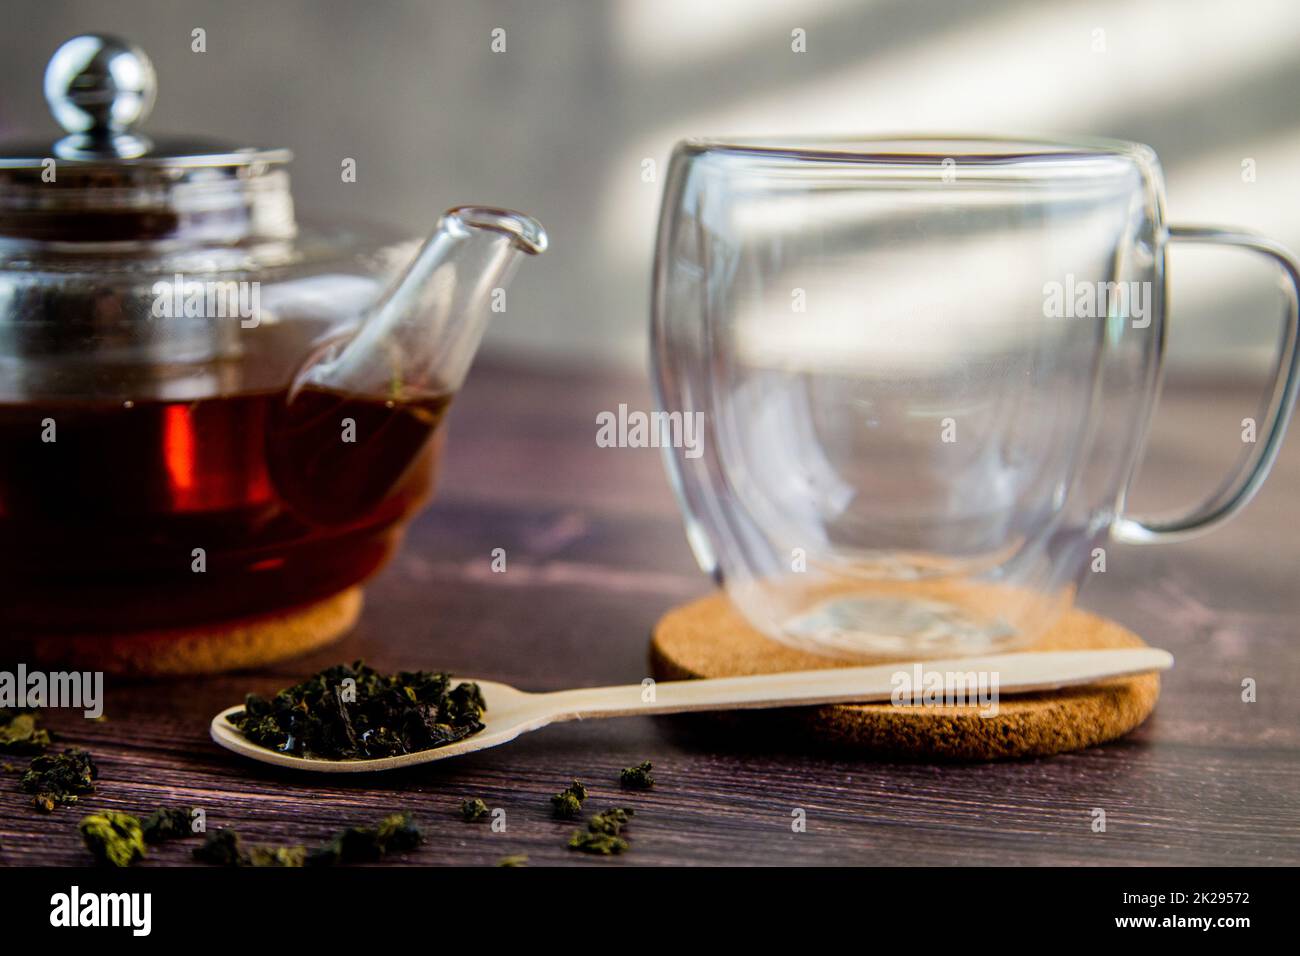 Un cucchiaio di legno con tè si trova su uno sfondo di legno scuro, una tazza e una teiera sono visibili da dietro, una foto in colori scuri. Foto Stock